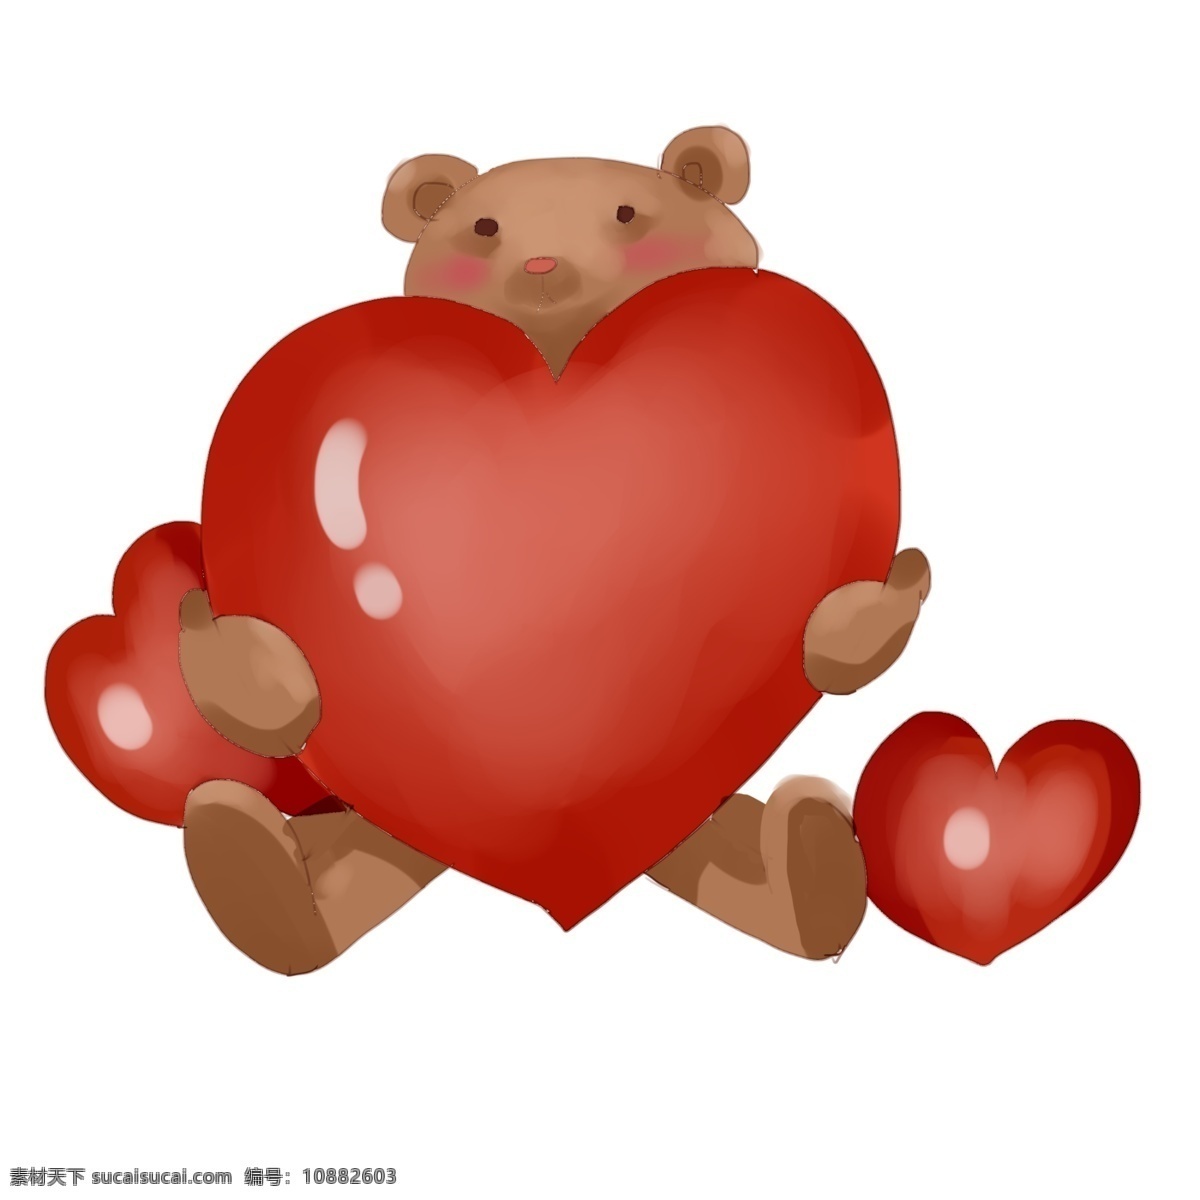 爱心 小 熊 手绘 插画 手绘小熊 卡通小熊 爱心小熊 可爱的小熊 红色的爱心 漂亮的小熊 小熊装饰